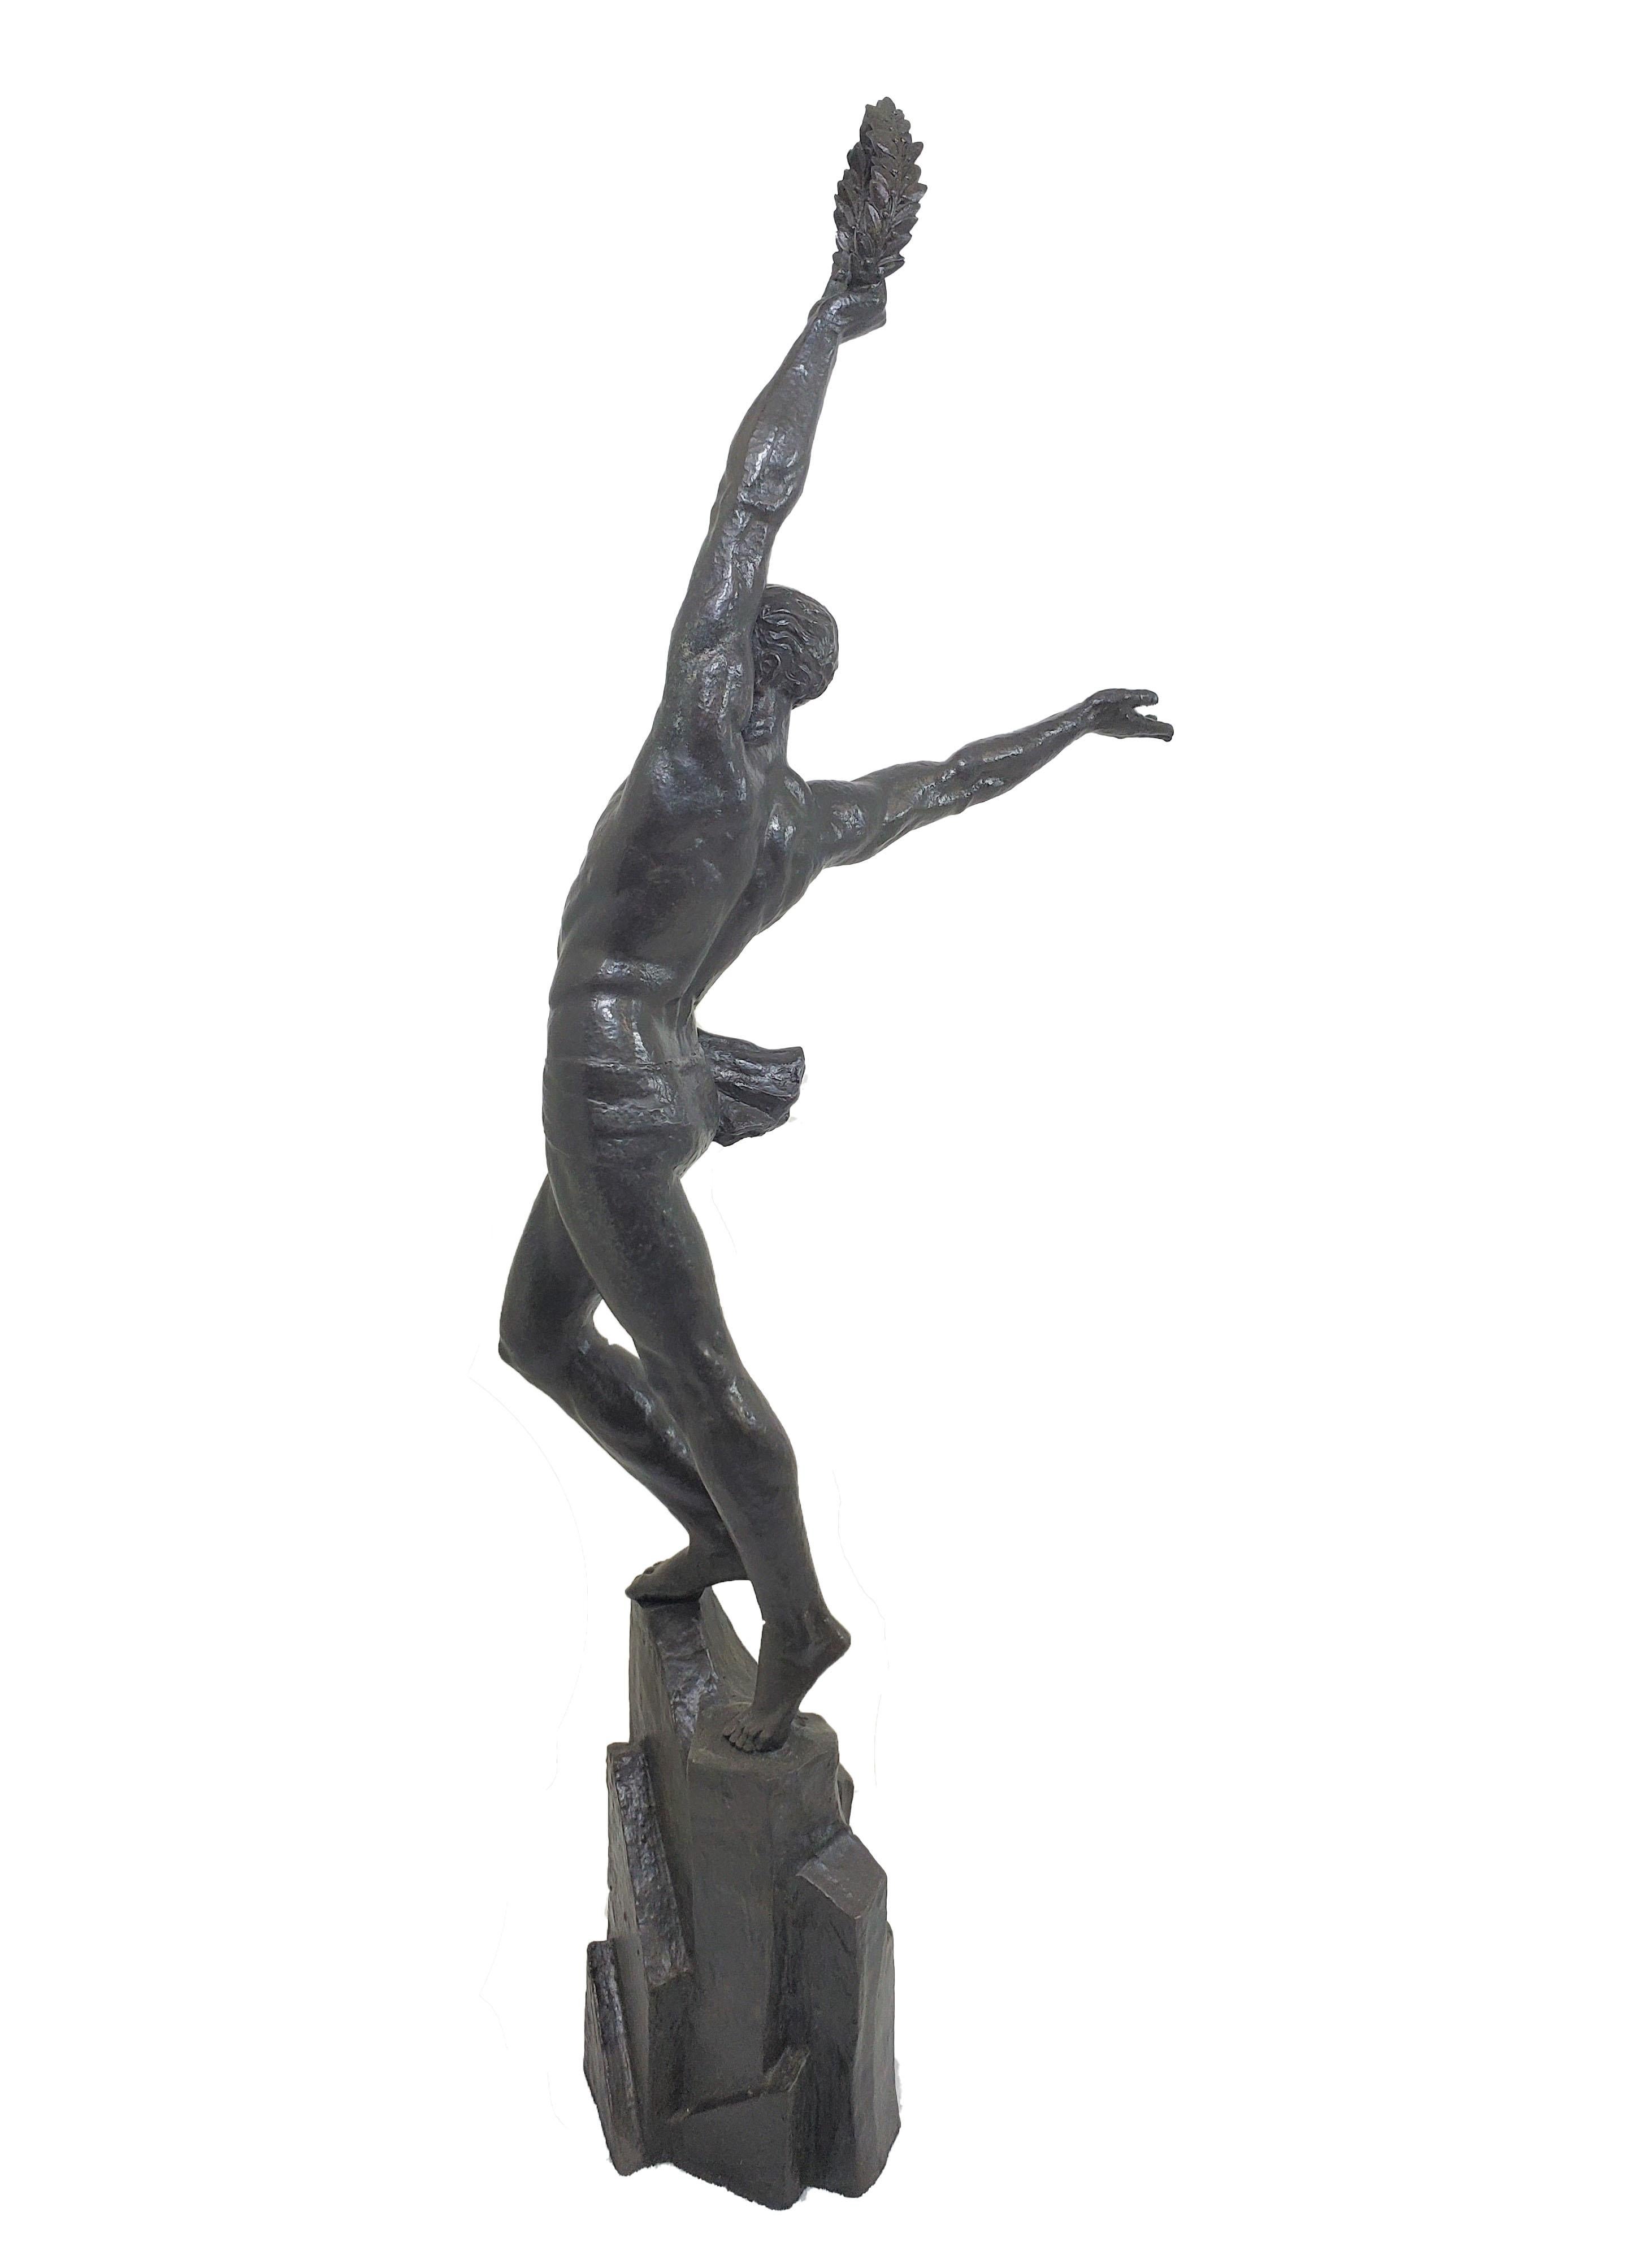 Pierre Le Faguays (1892-1962)
Impressionnante et très grande figure en bronze Art déco français de 43 pouces de haut représentant un jeune homme athlétique, vêtu d'une tenue légère, presque nu, se tenant fièrement au sommet d'un socle rocheux élevé